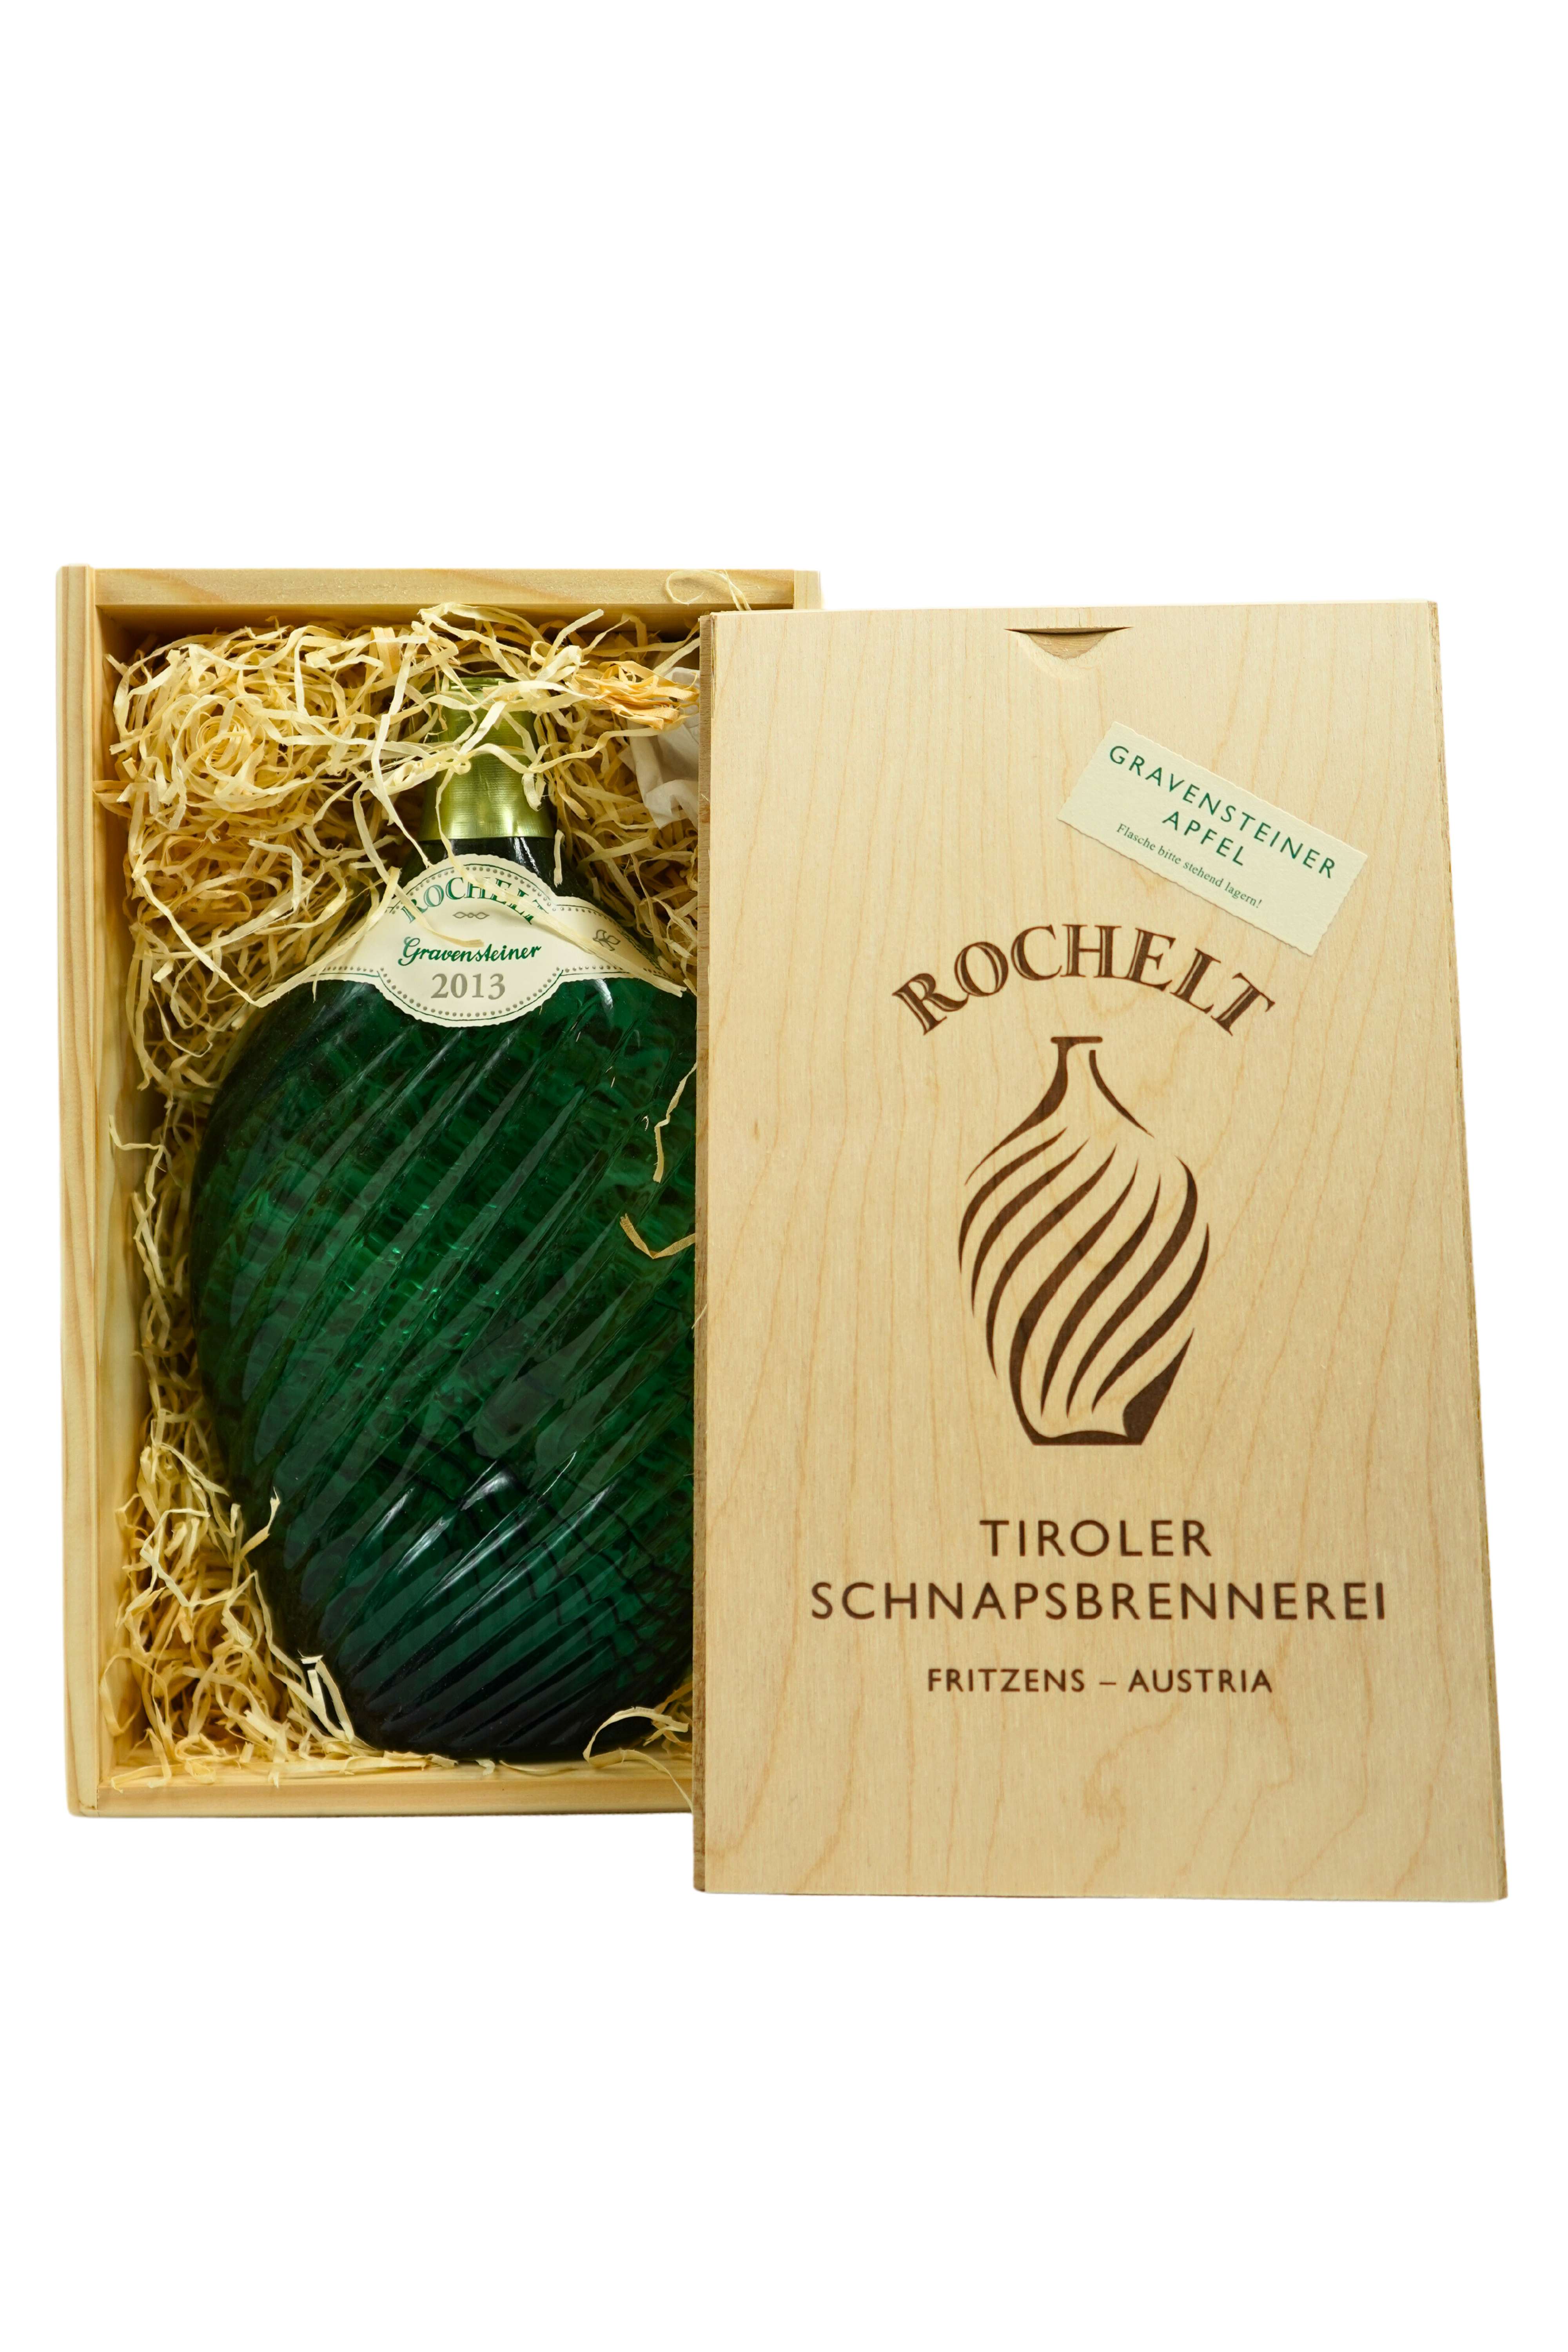 2013 Gravensteiner Apfel - Rochelt